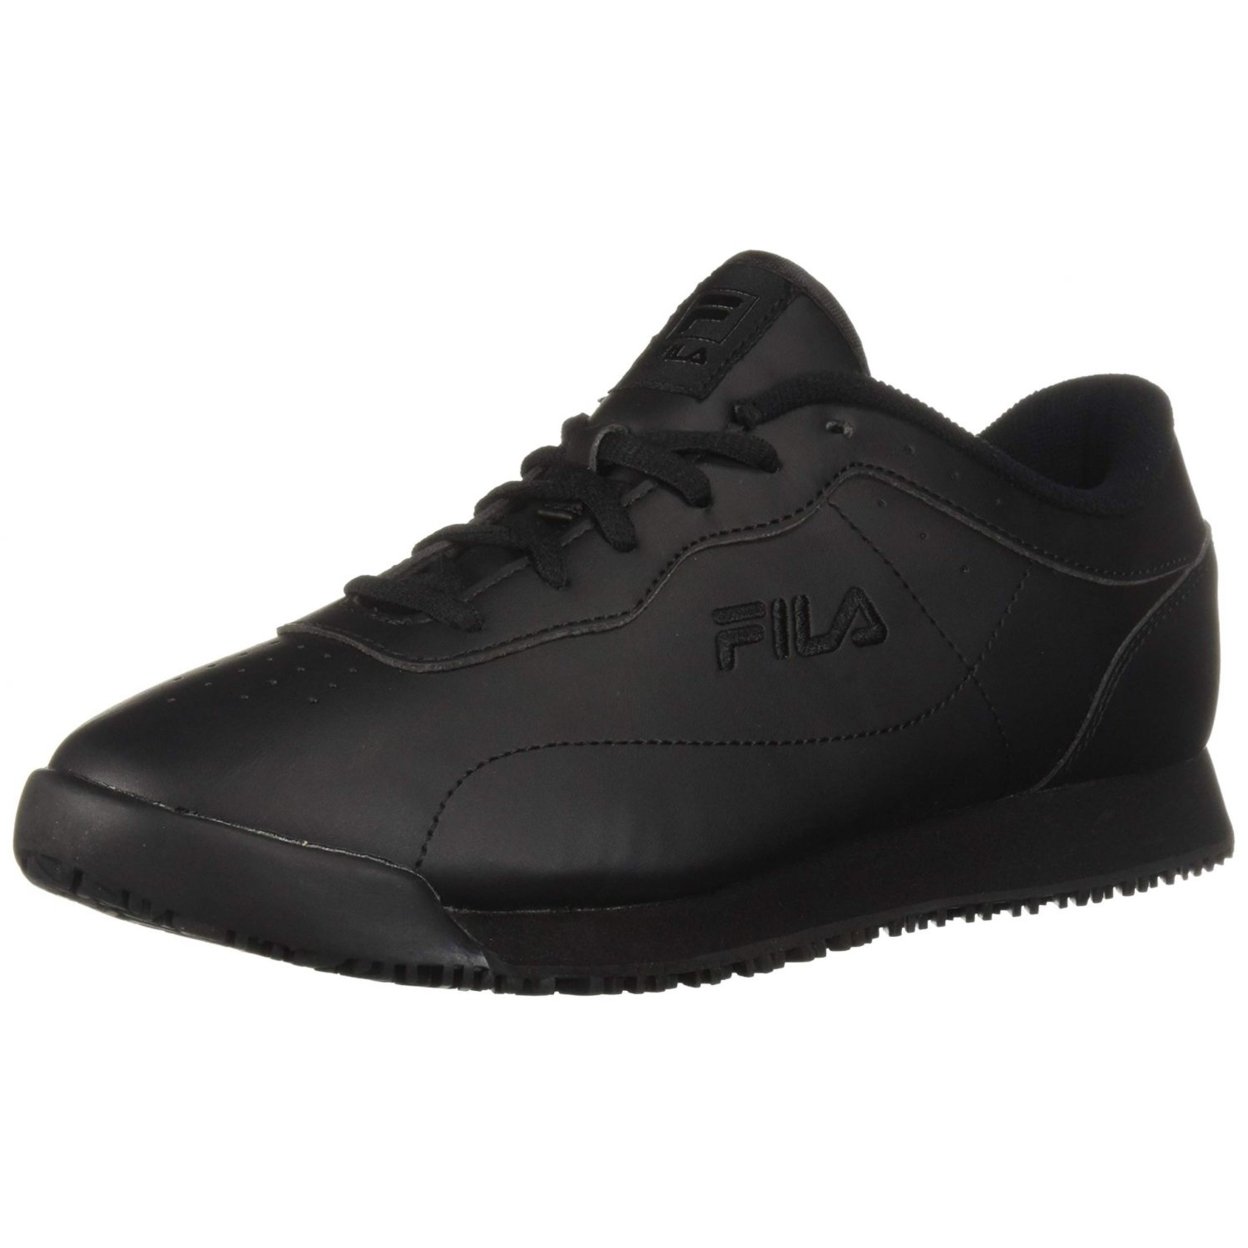 Fila Memory Viable Sr Wide Womens Shoes Size 10, Color: Black 0 BLK/BLK/BLK - BLACK, 5